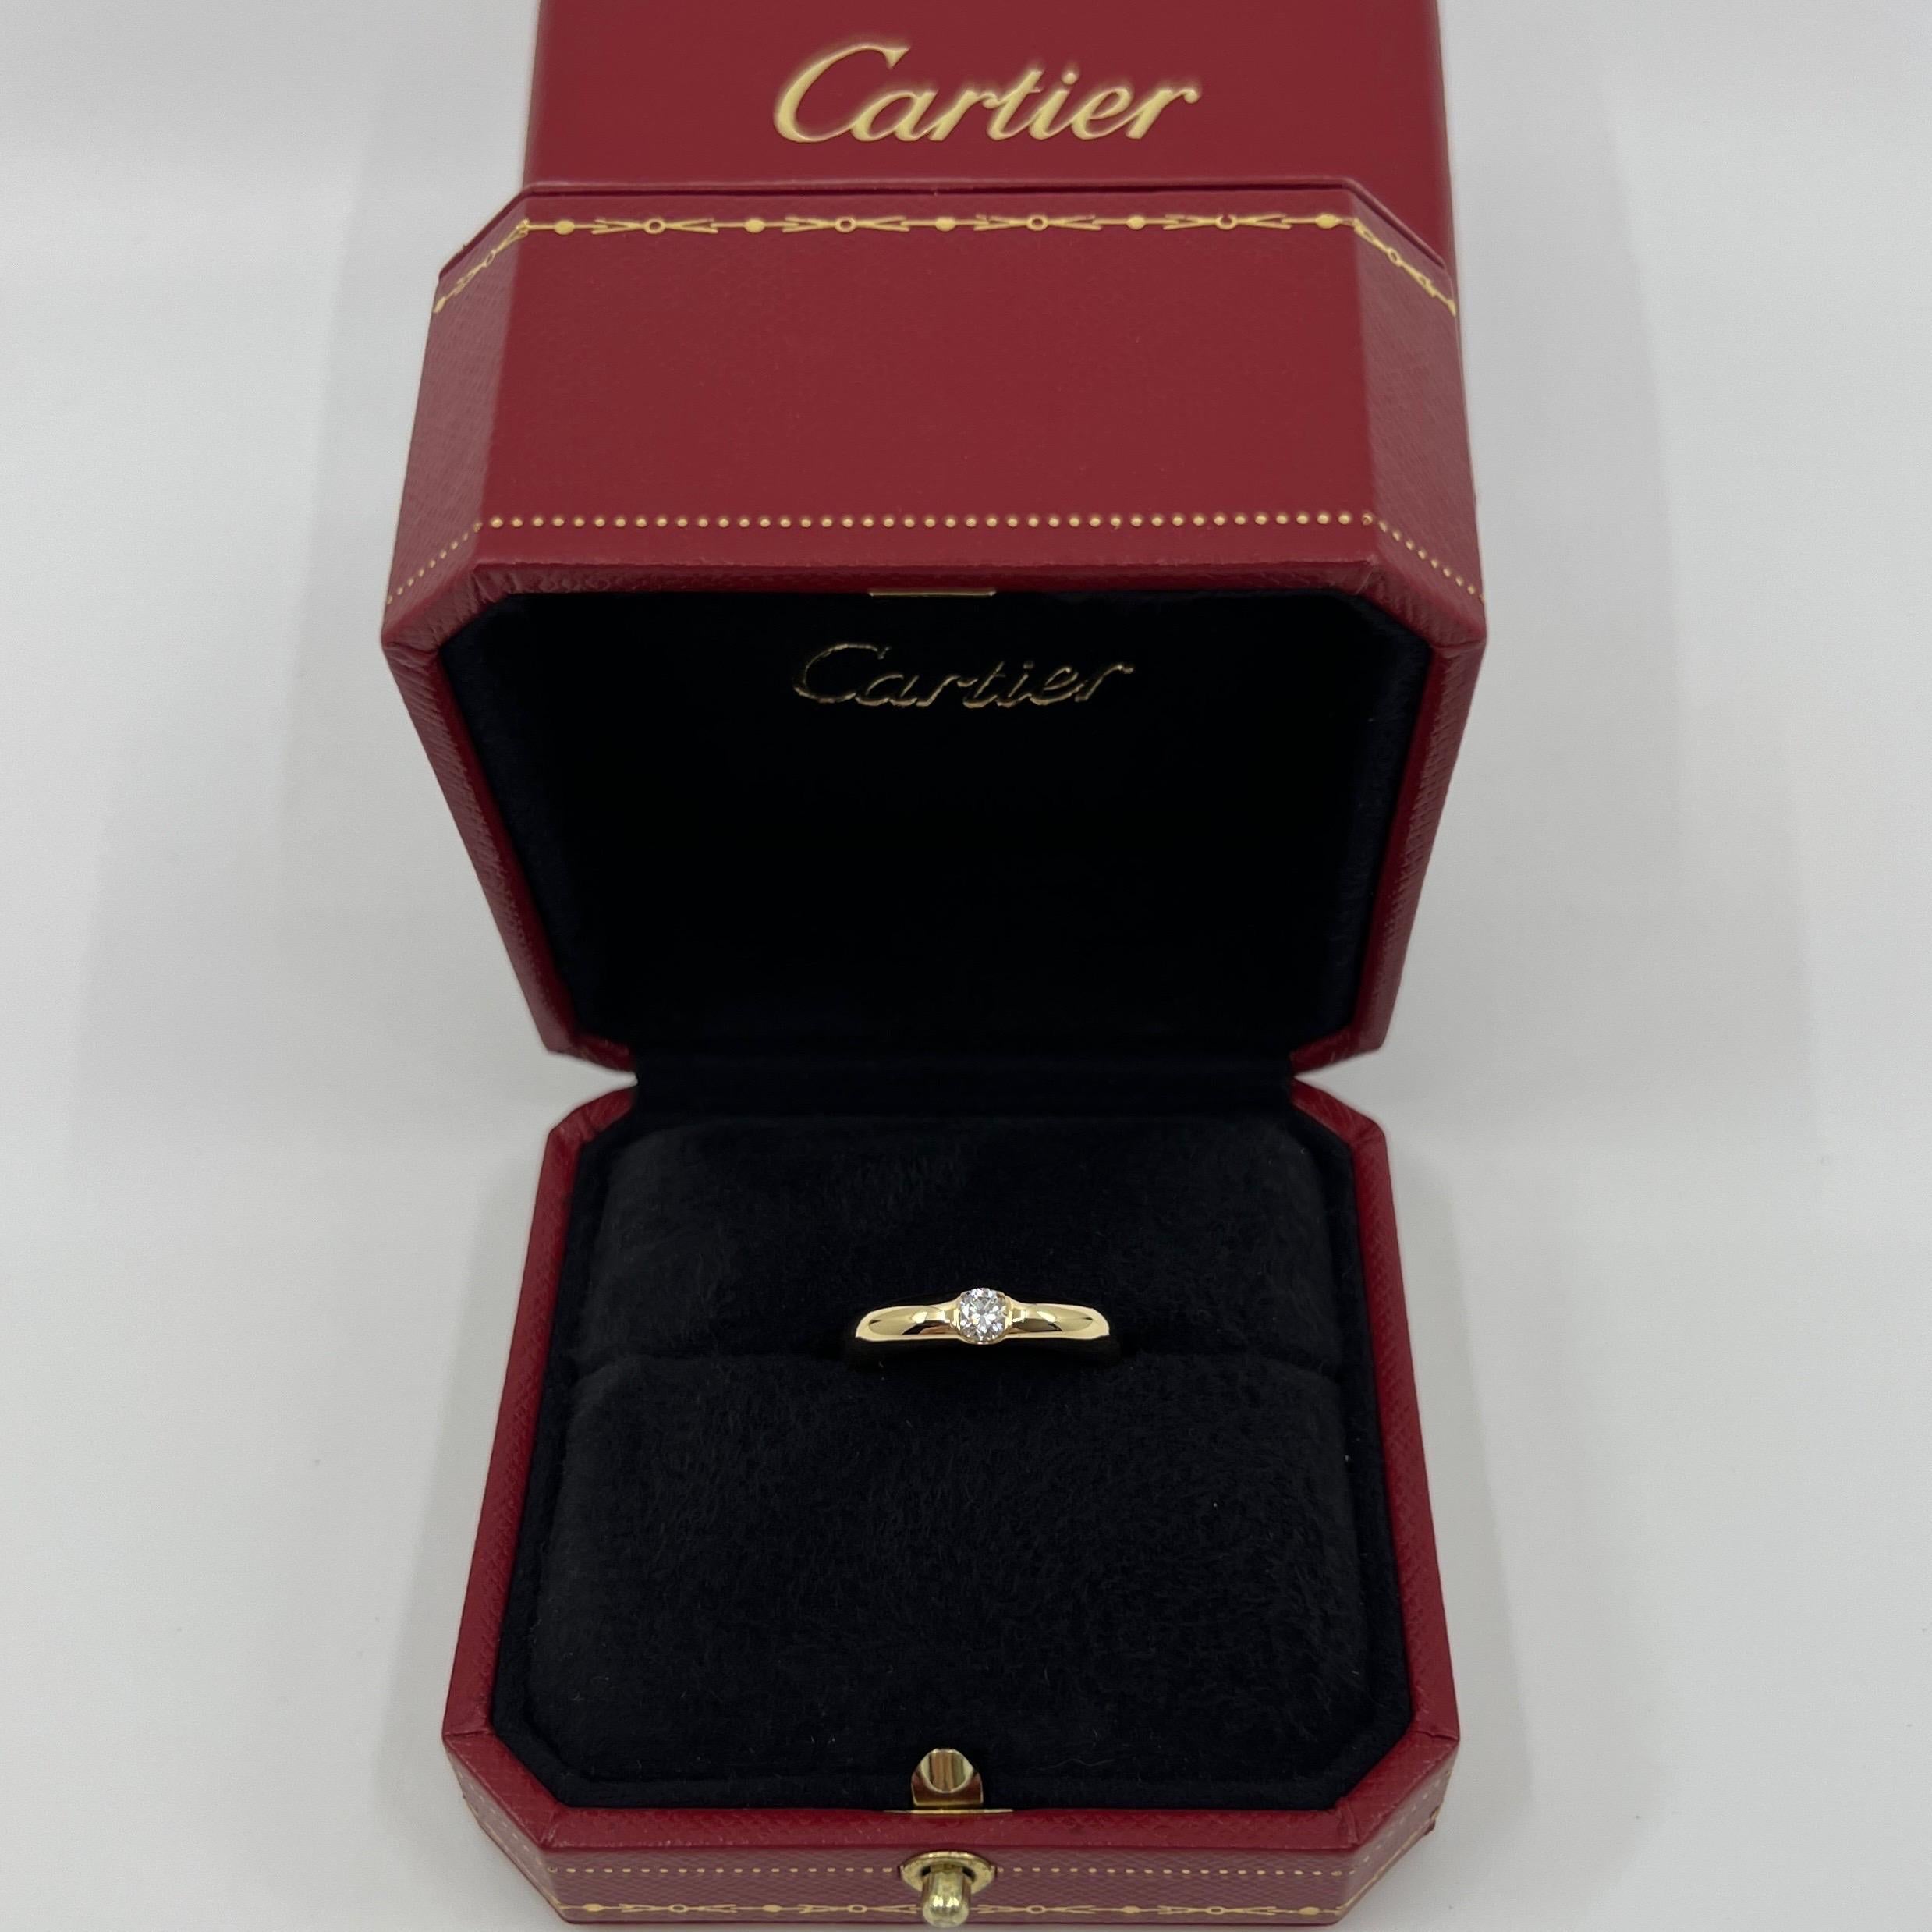 Vintage Cartier Round Brilliant Cut Natural Diamond 18k Yellow Gold Solitaire Band Ring.

Superbe bague en or jaune sertie d'un diamant rond naturel de 0,22ct. Couleur E, pureté VVS1, excellente taille ronde et brillante.
Les maisons de haute